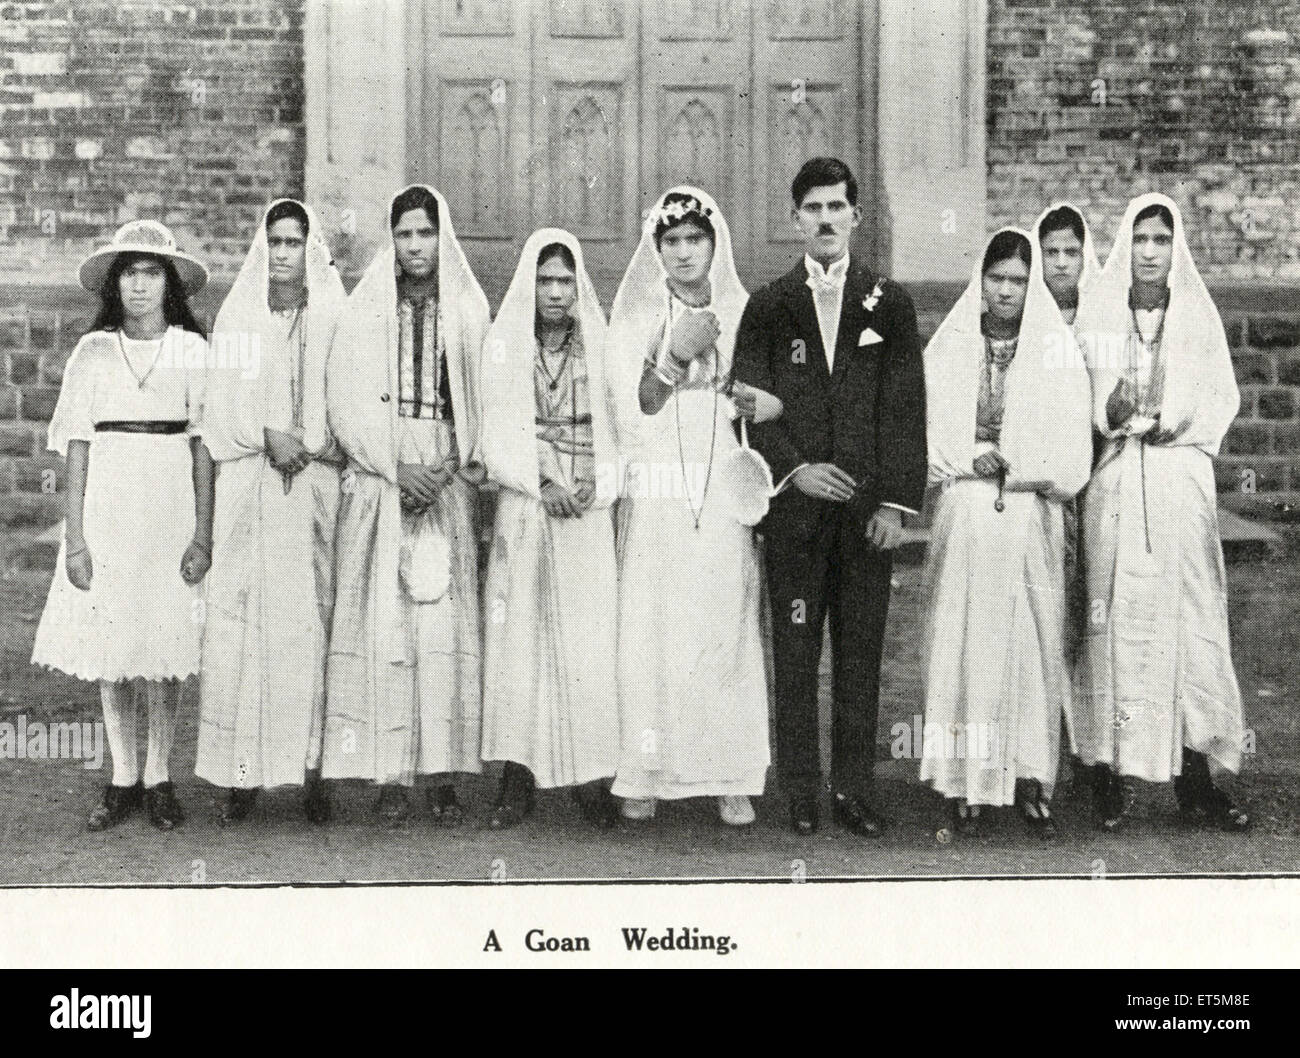 Katholische Gemeinschaft; Goan Wedding; Bombay; Mumbai; Maharashtra; Indien; Asien; asiatisch; indisch; alter Jahrgang 1900s Bild Stockfoto